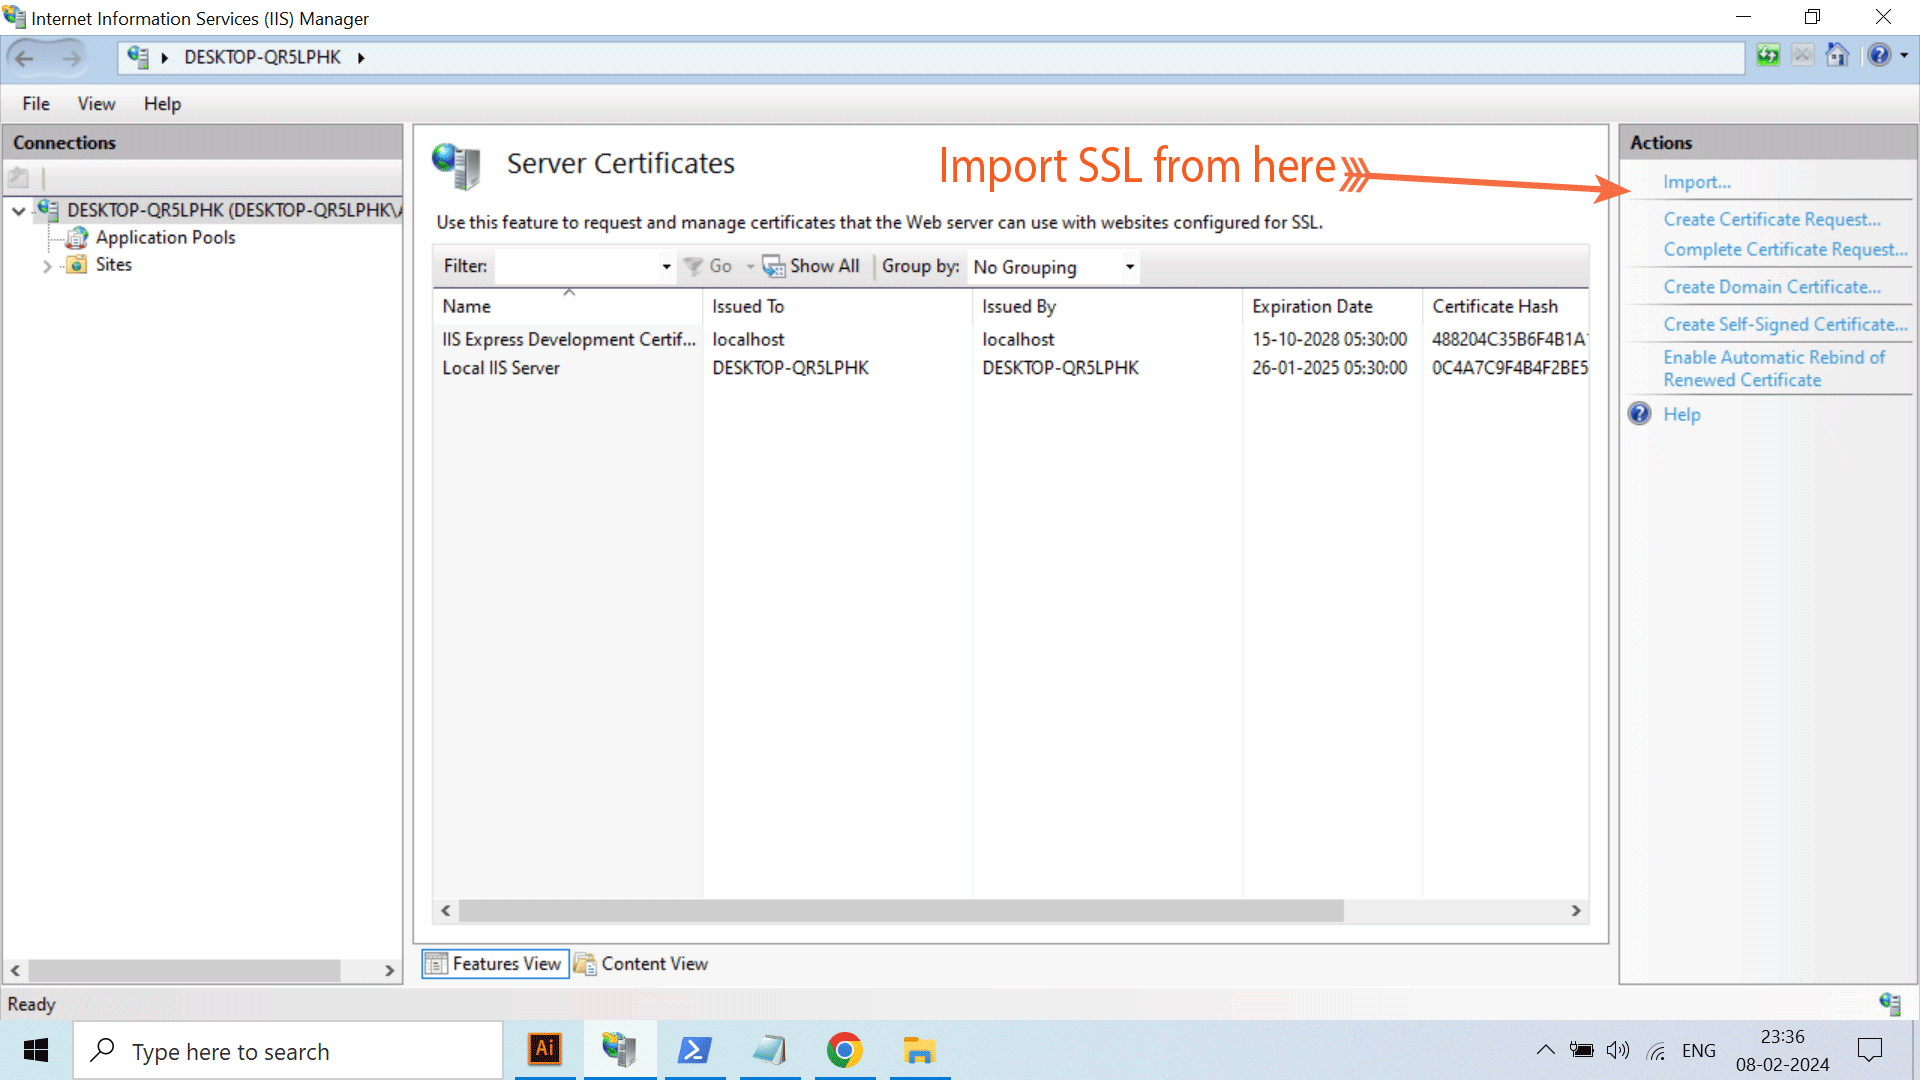 Import SSL IIS